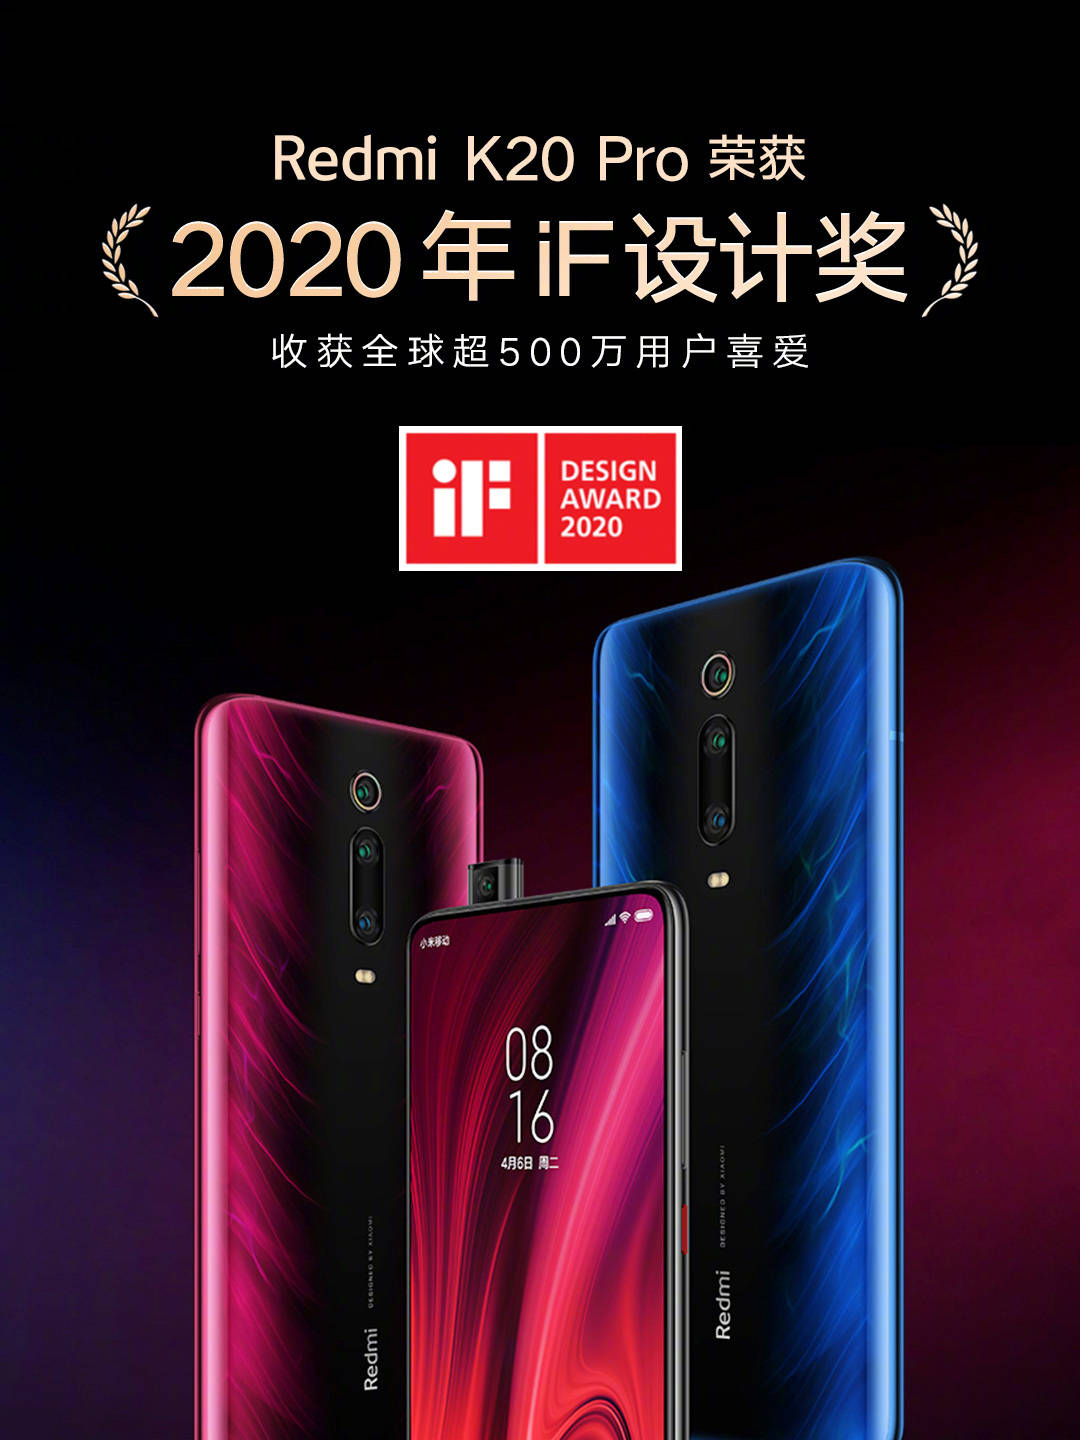 Xiaomi Mi 9T Pro recibe el premio iF Design Award 2020 por su diseño e innovación. Noticias Xiaomi Adictos